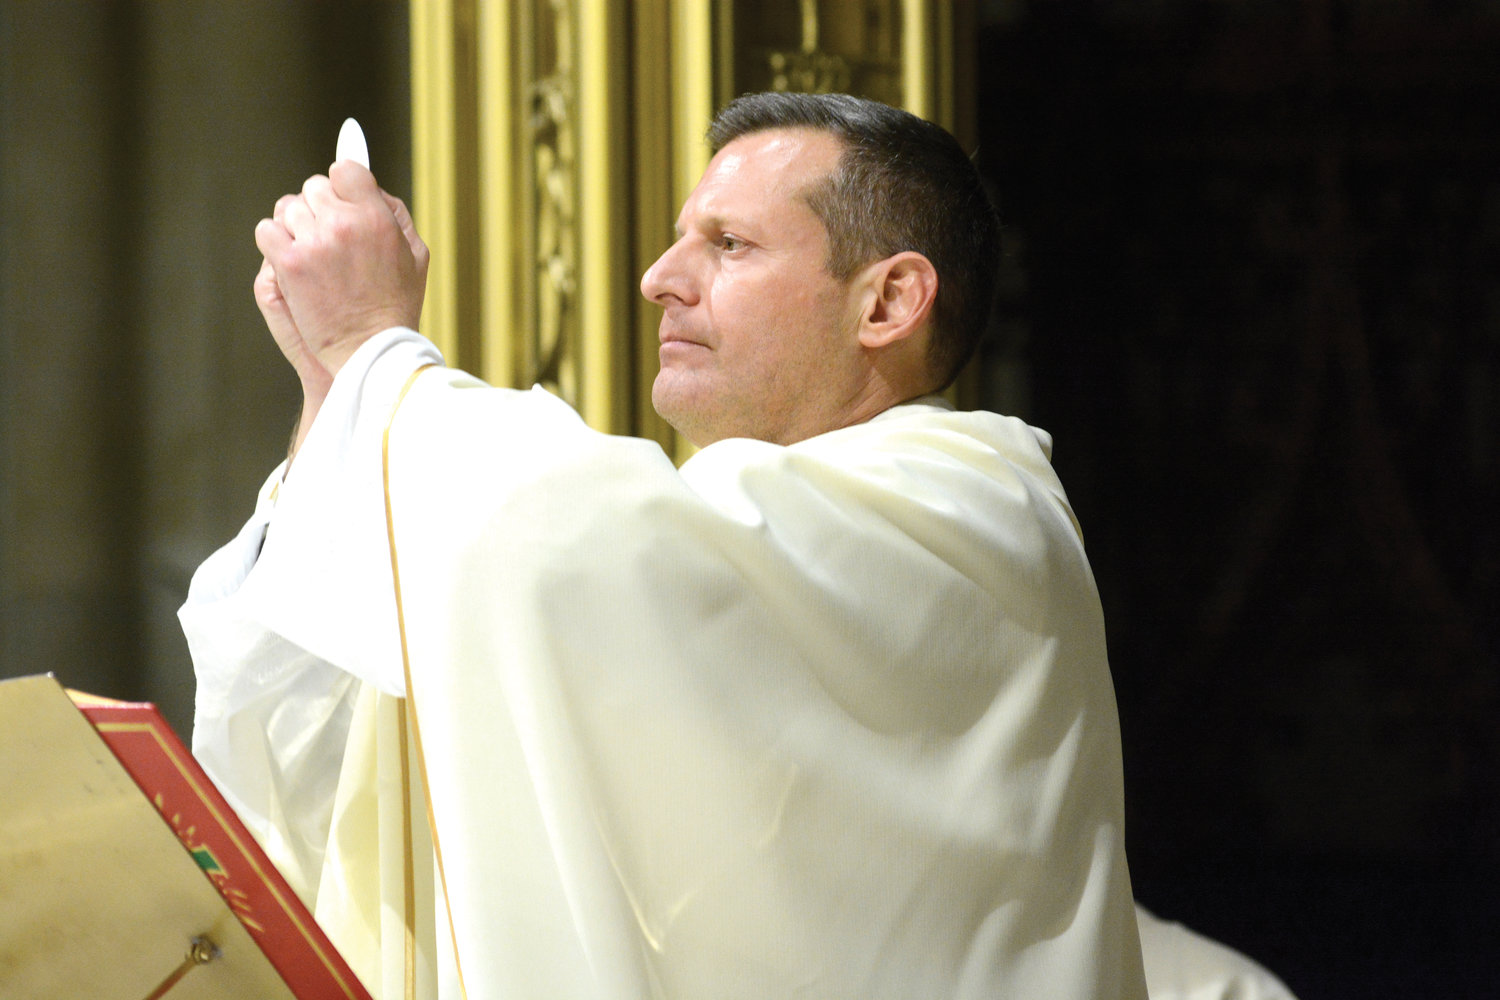 El padre Enrique Salvo, rector de la Catedral de San Patricio consagra la eucaristía el 5 de diciembre durante la misa anual en honor a la Inmaculada Concepción de María, La Purísima.